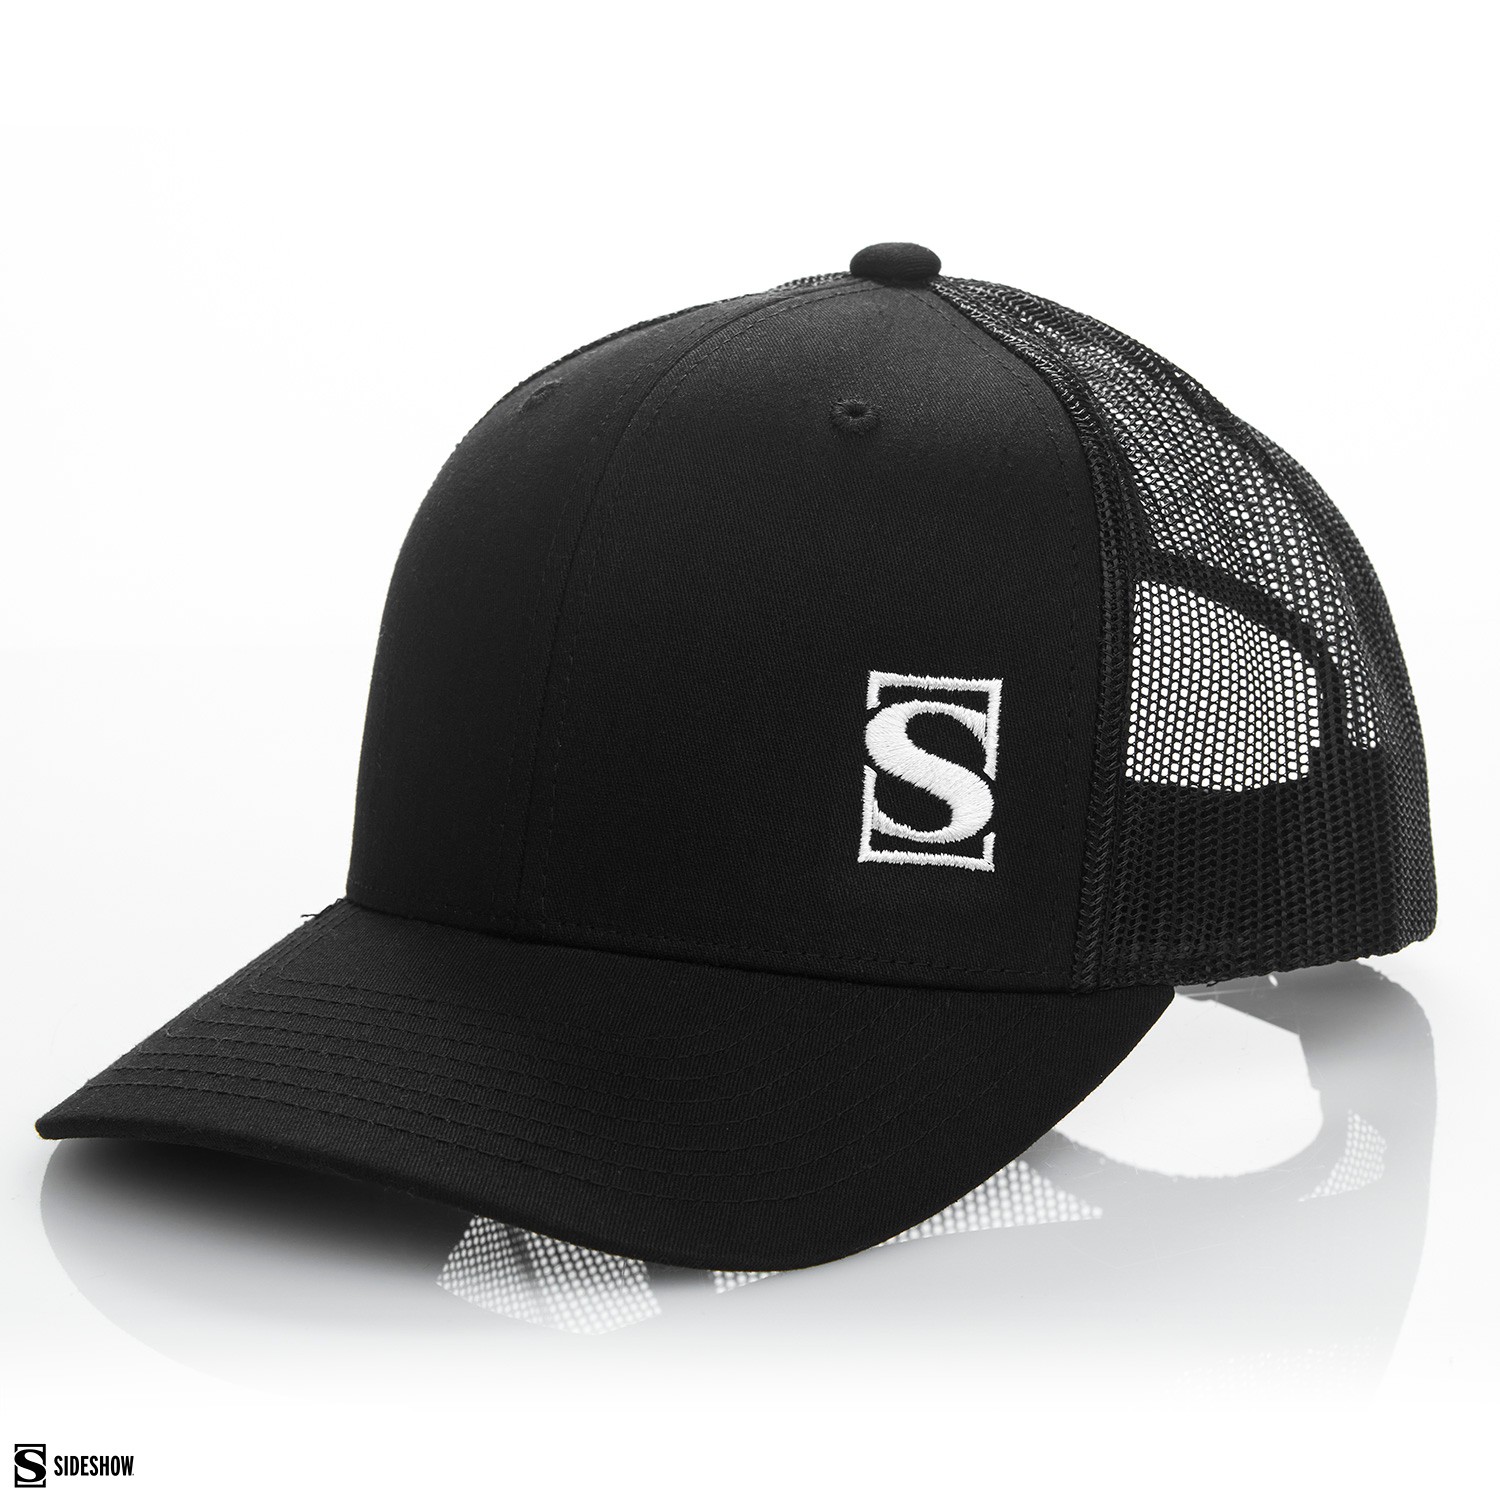 Sideshow Trucker Hat (Black) View 6